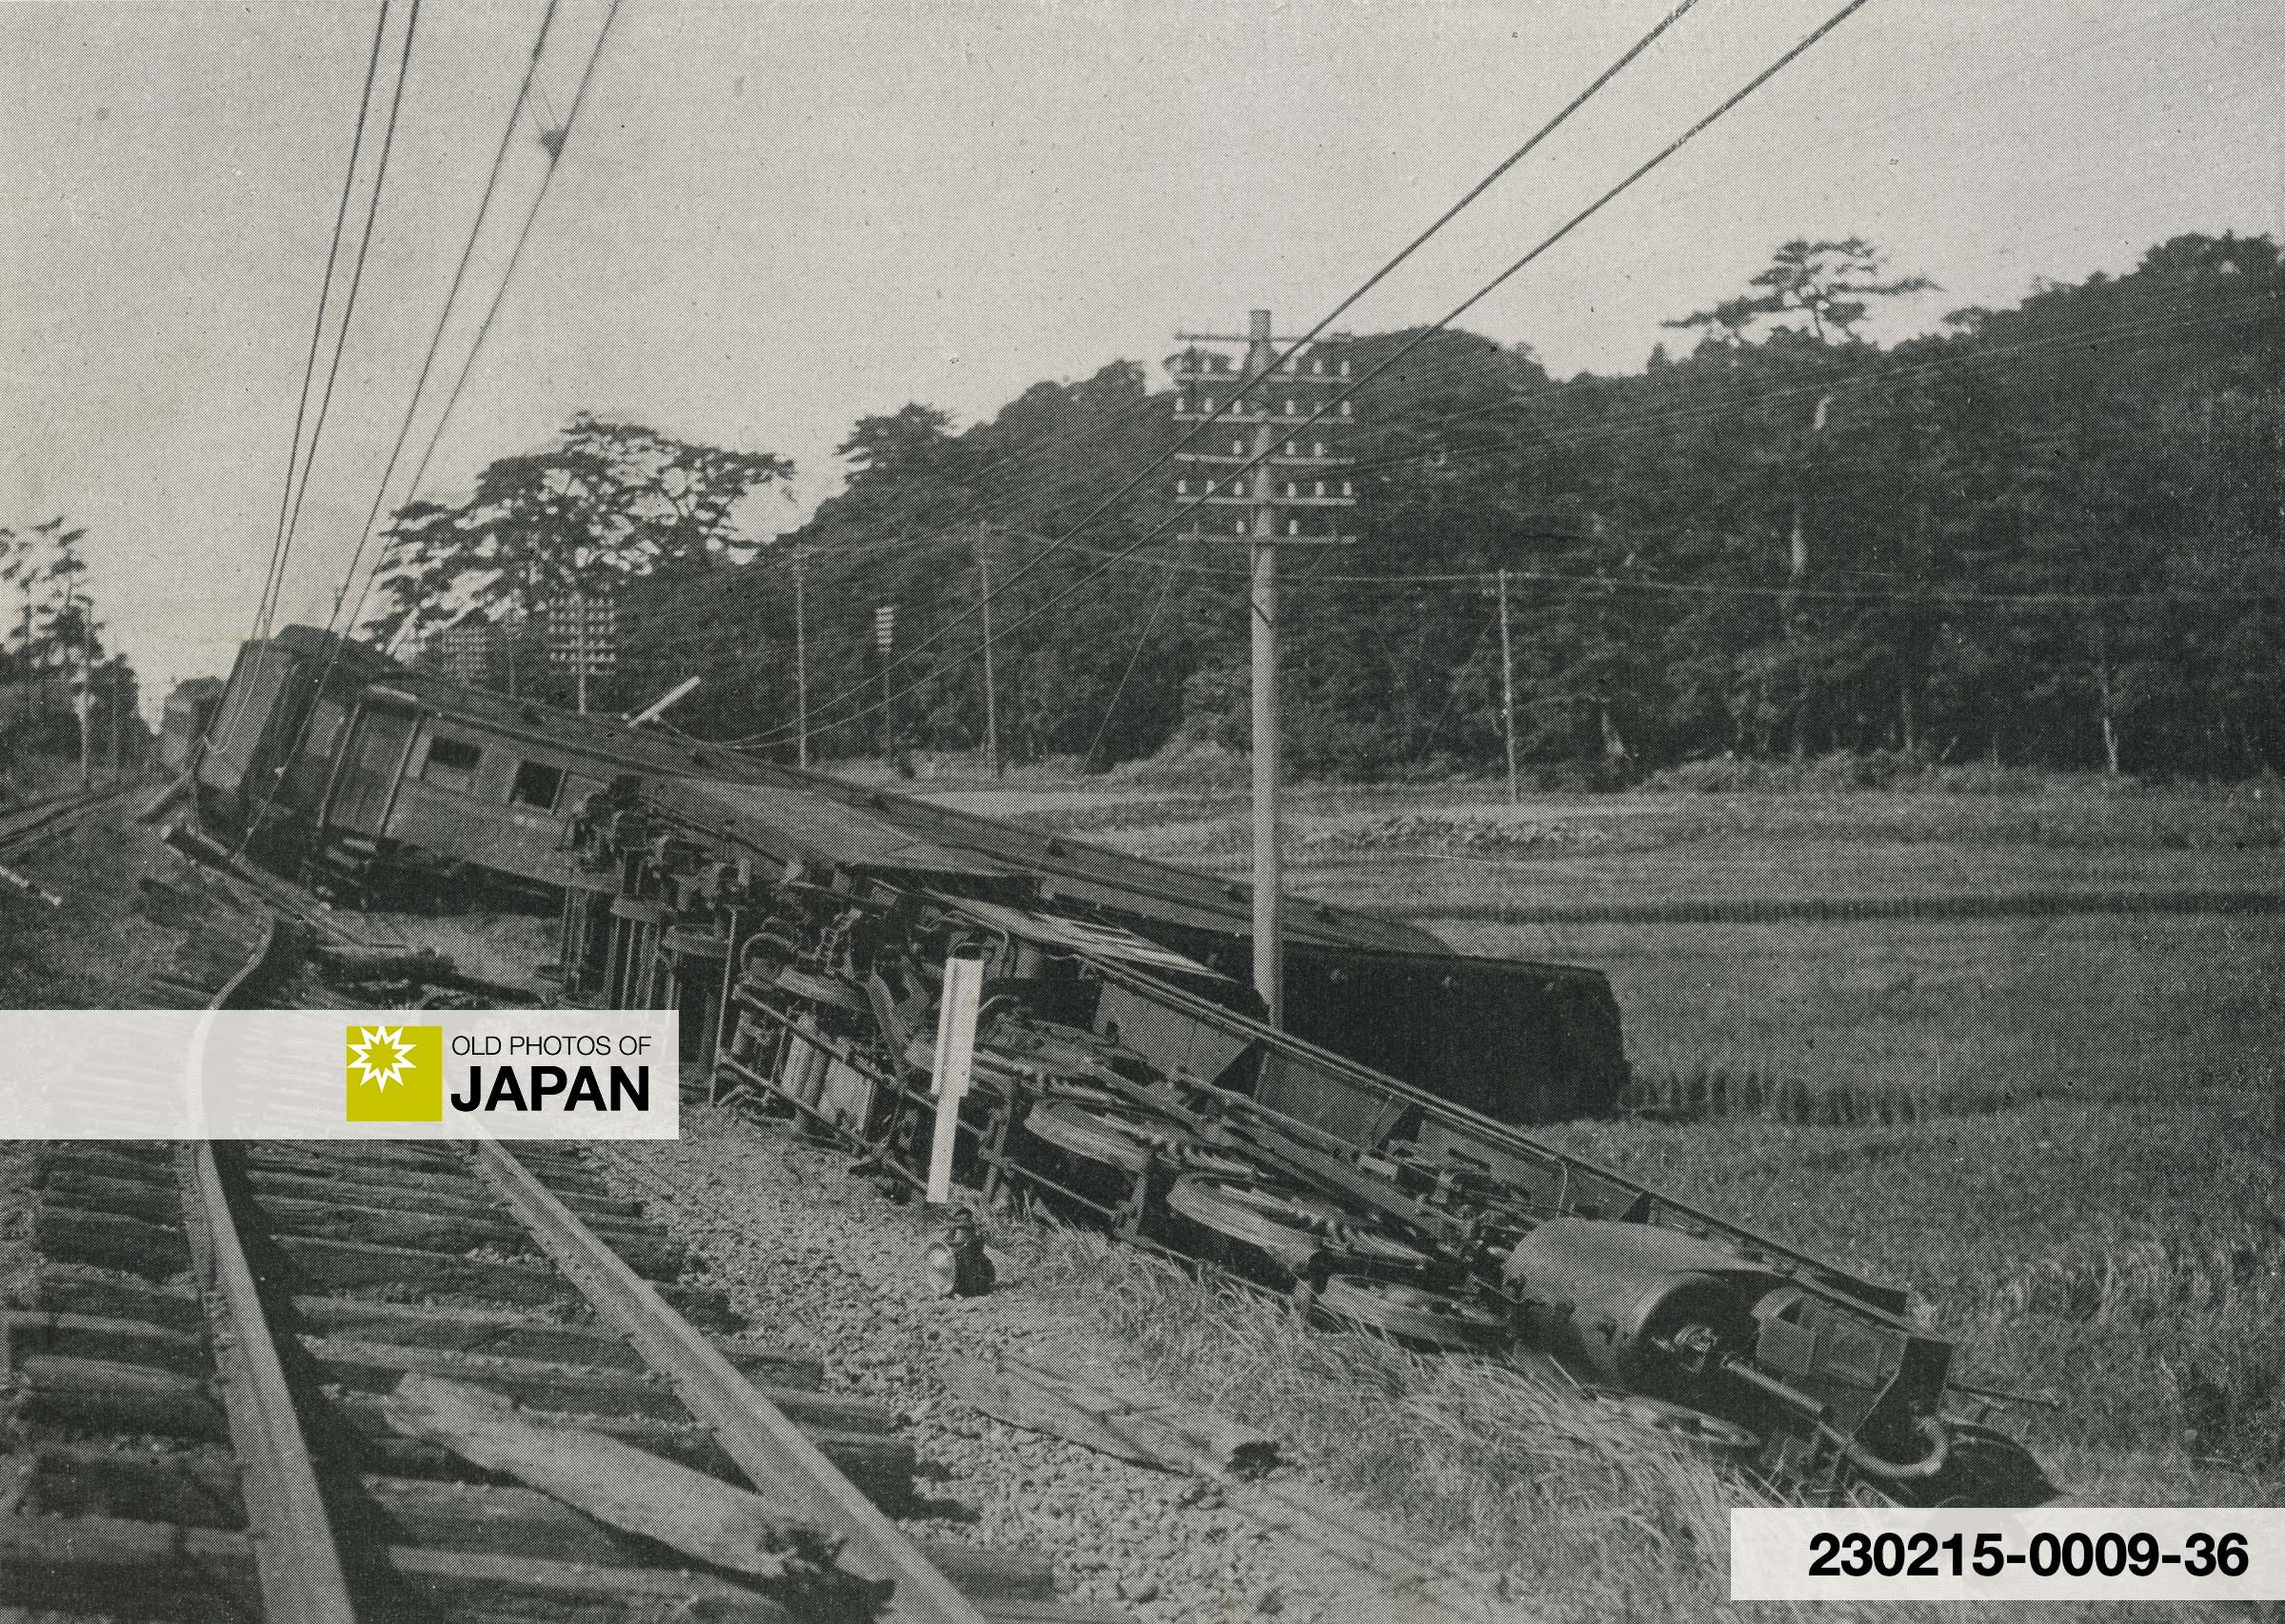 A passenger train wrecked near Oiso, Kanagawa Prefecture, 1923